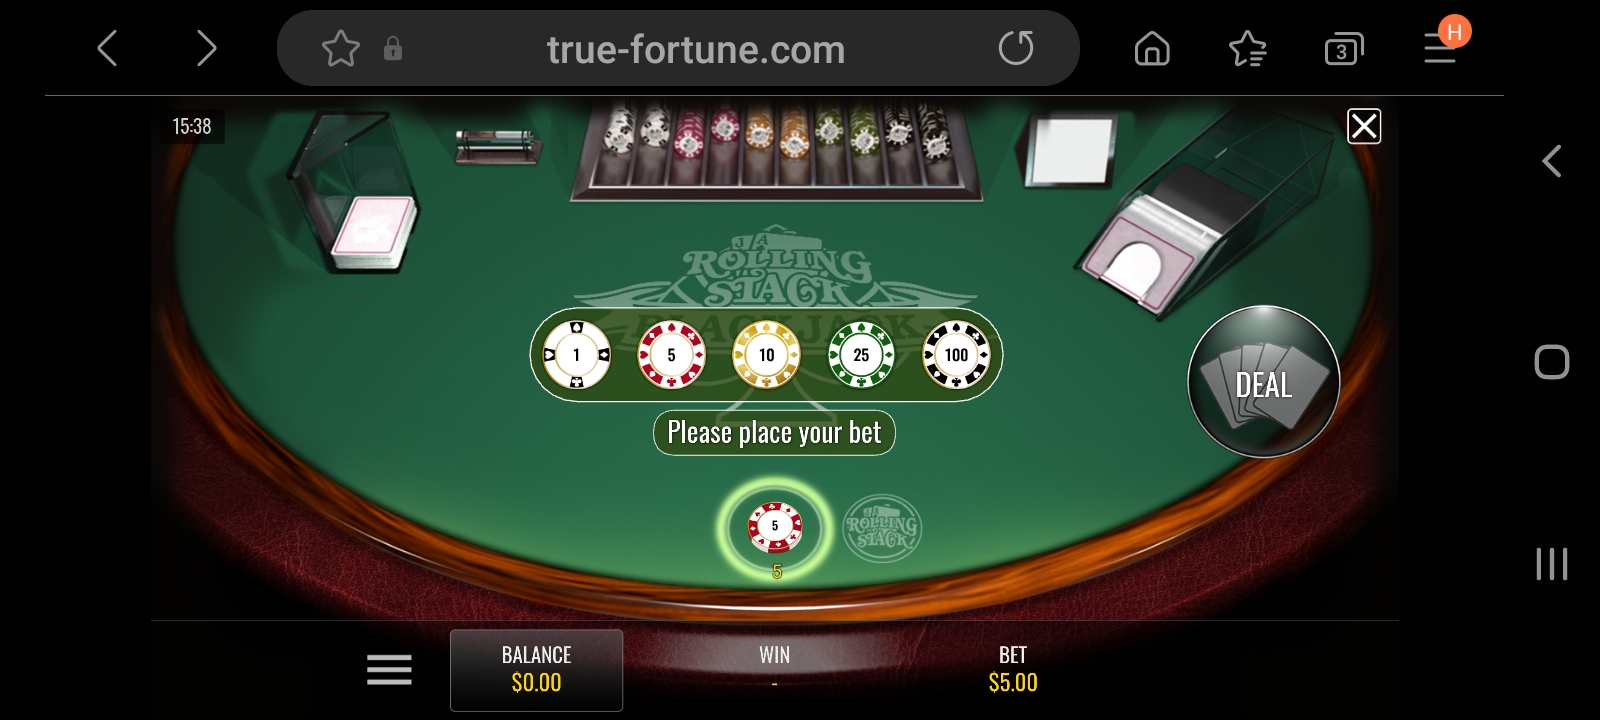 true fortune casino app screenshot 4